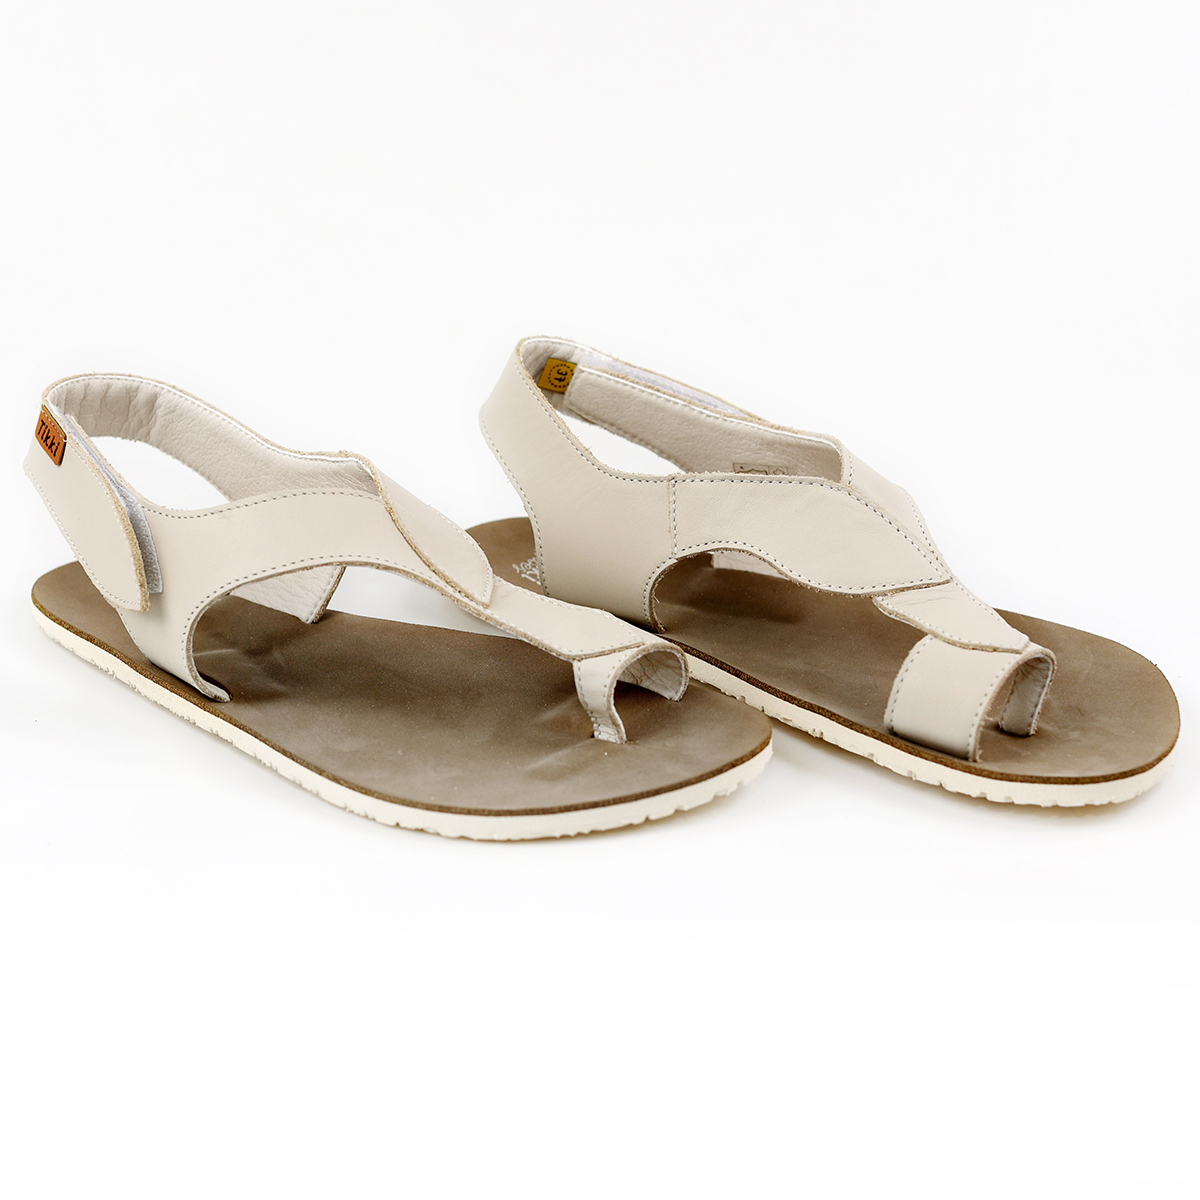 Tikki Soul nahast sandaalid, Macchiato Sisejalats/suvi - HellyK - Kvaliteetsed lasteriided, villariided, barefoot jalatsid